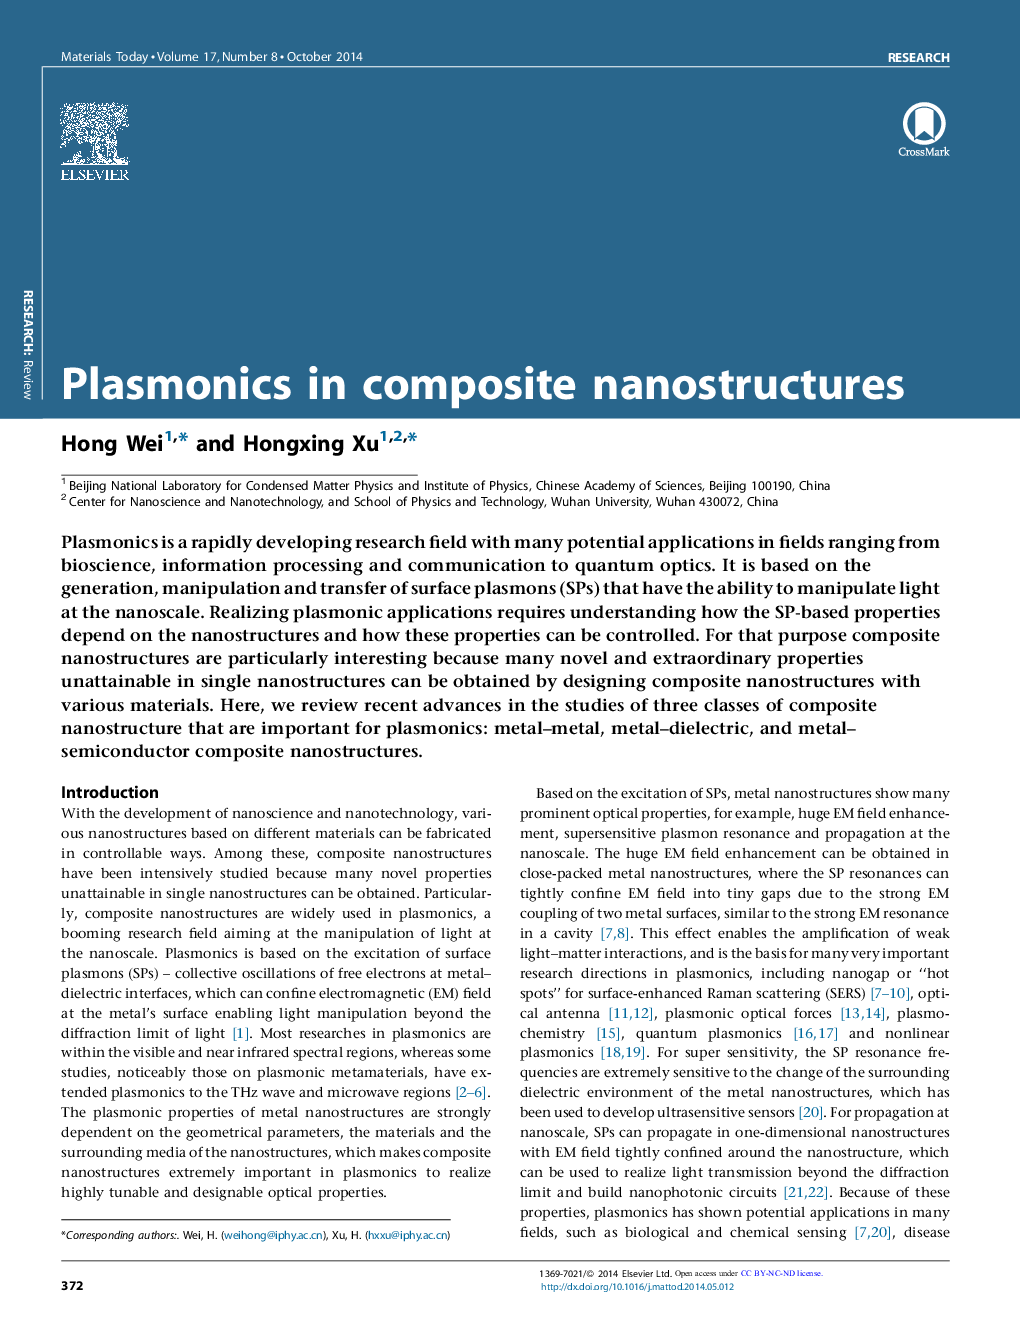 پلاسمونیک در نانوساختارهای کامپوزیت 